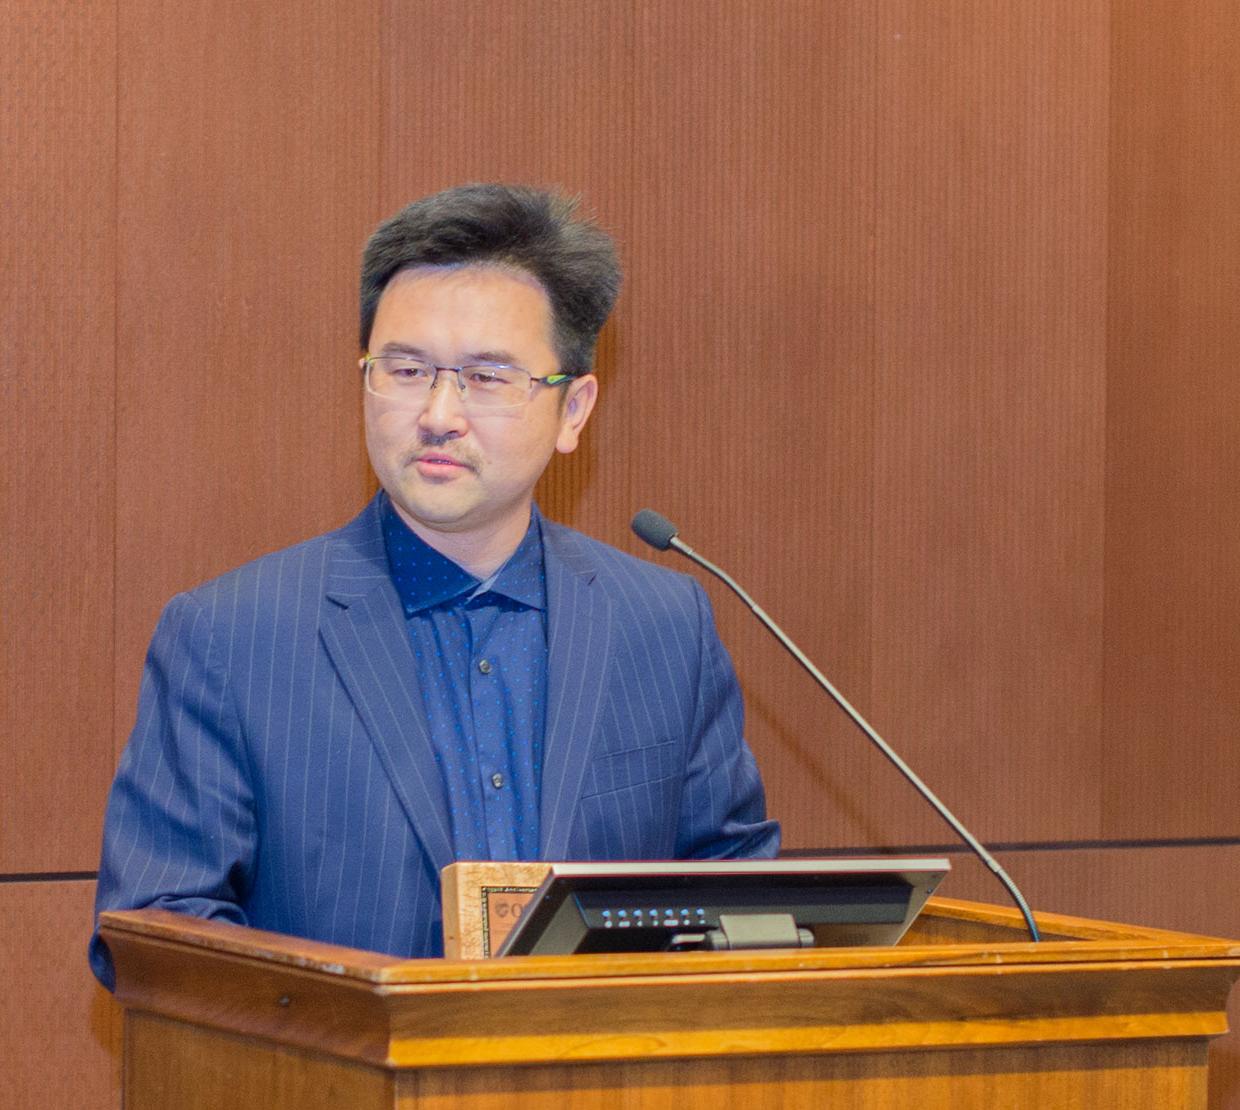 David Ji talking behind podium